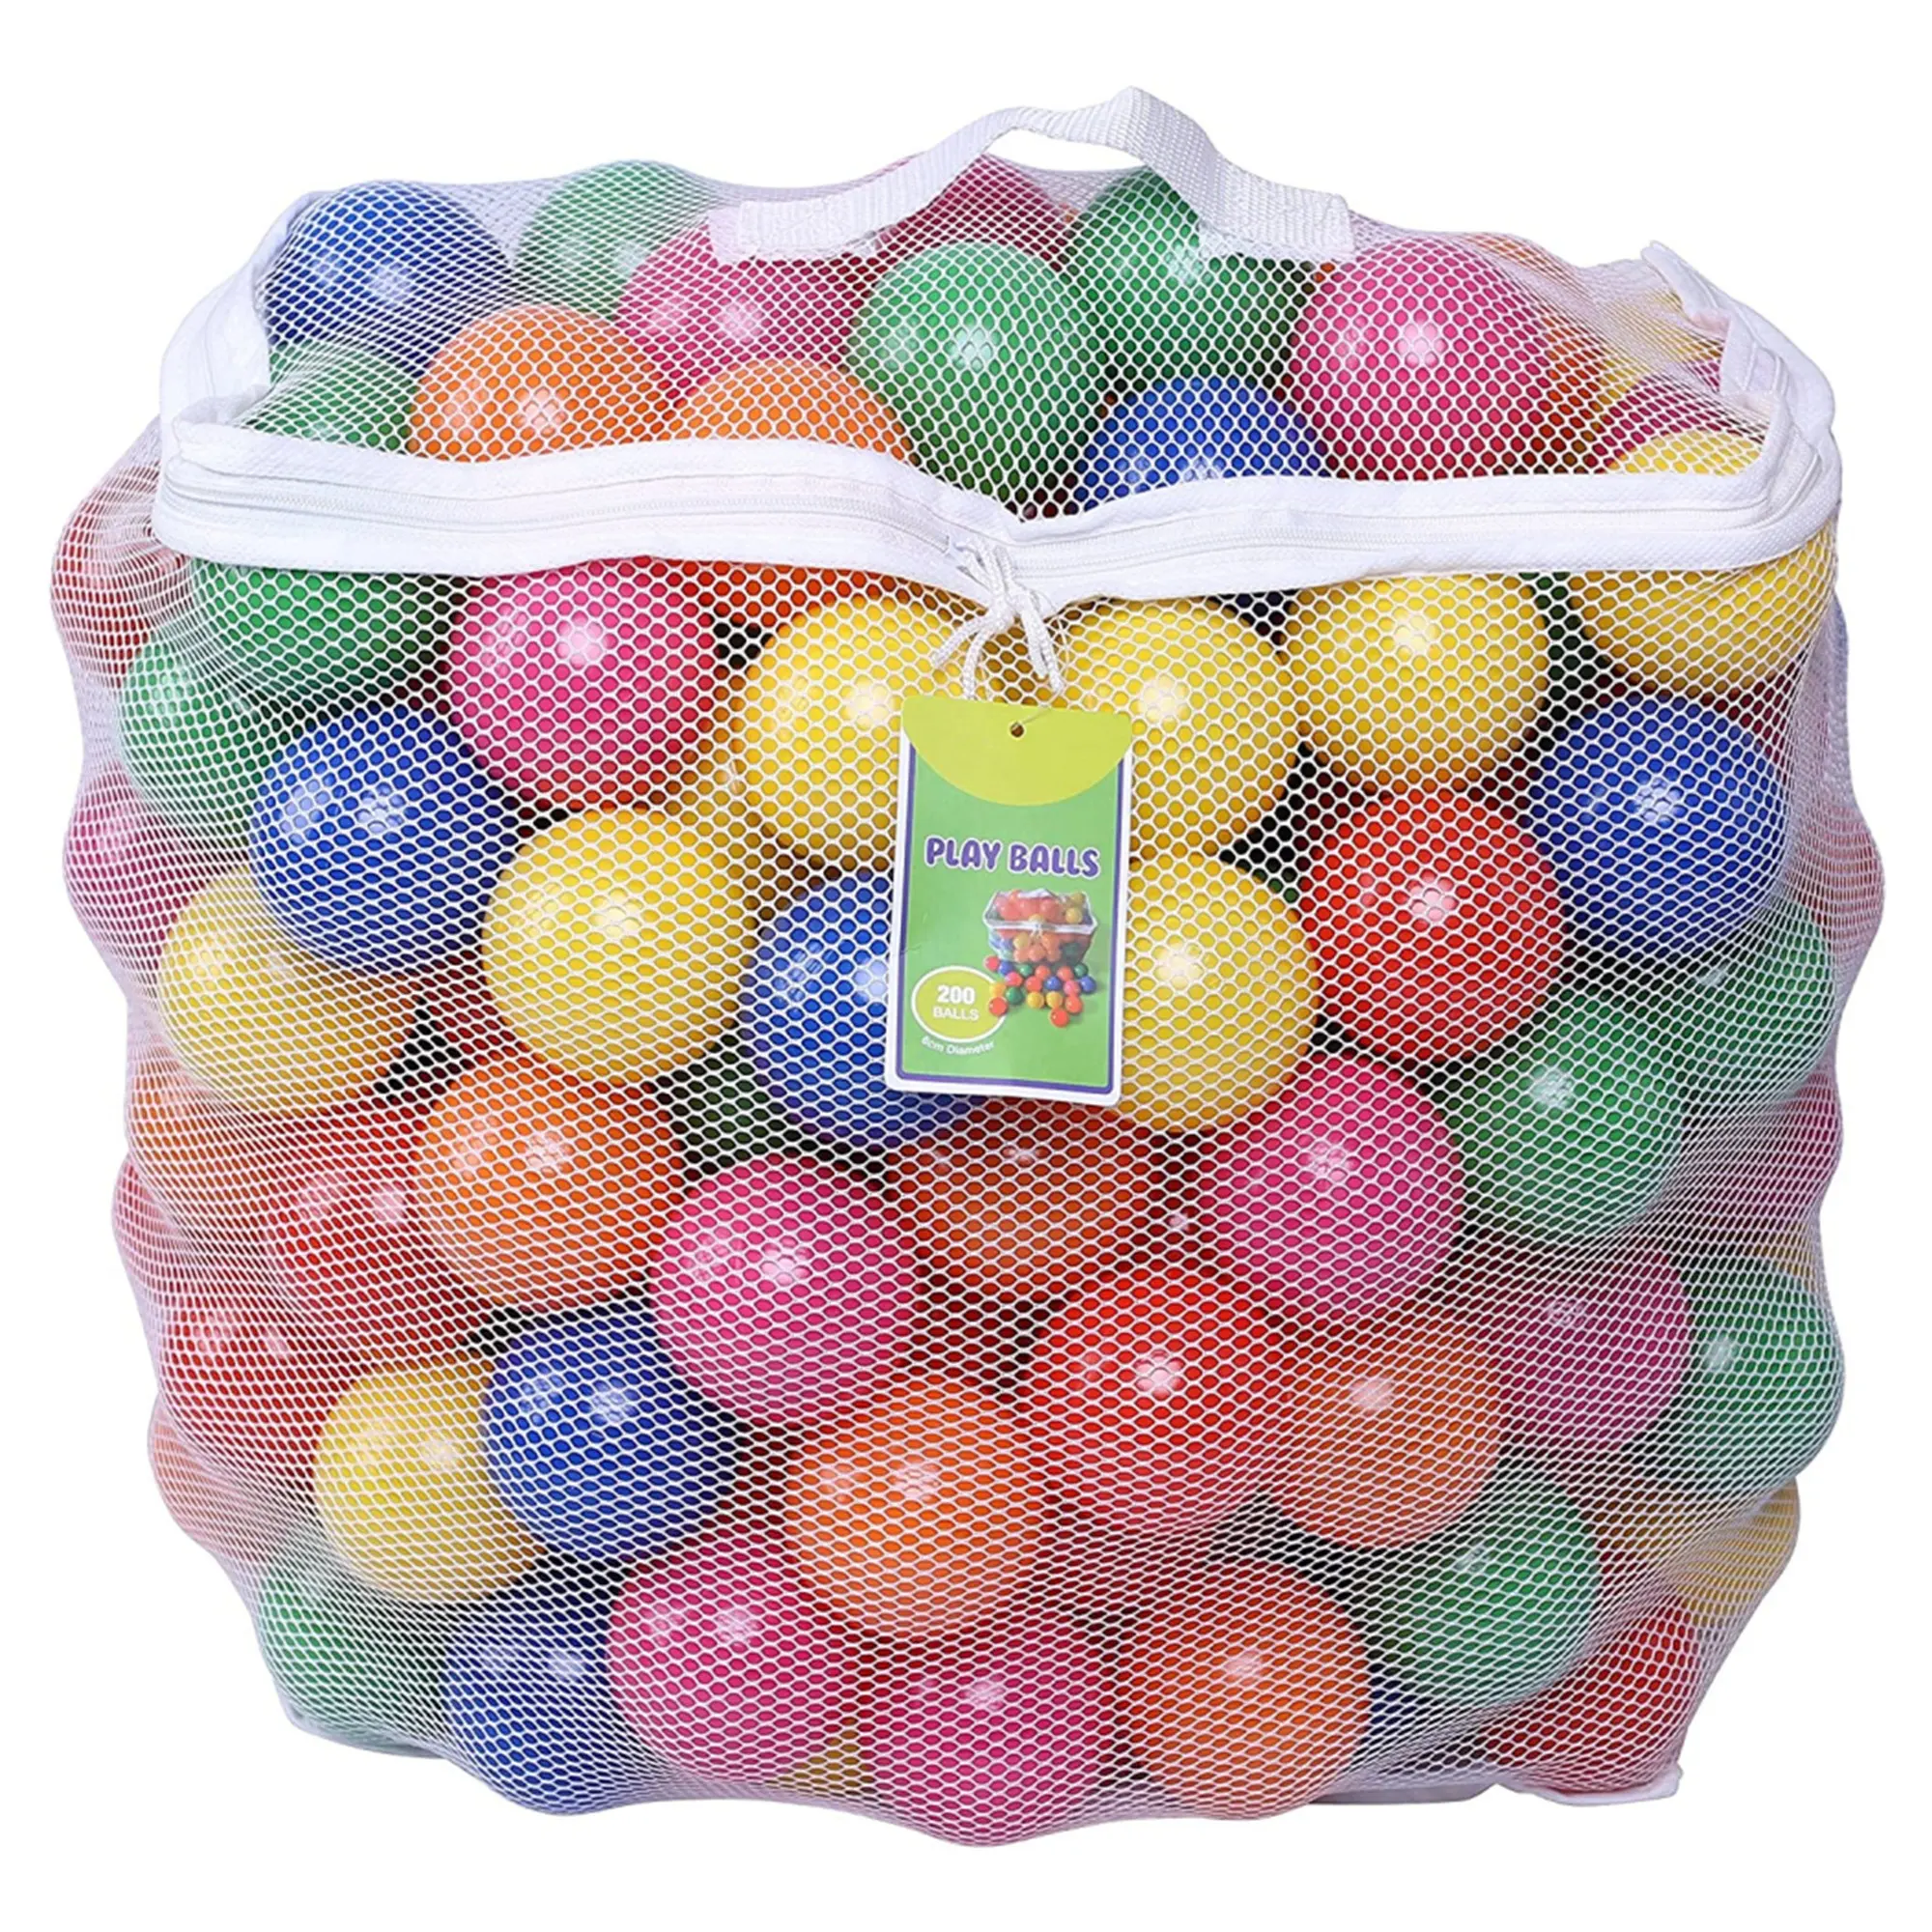 Bolas de recarga de plástico para crianças, bolas recarregáveis de plástico para play ball ball e bpa free inclui um saco reutilizável de armazenamento, 200 unidades